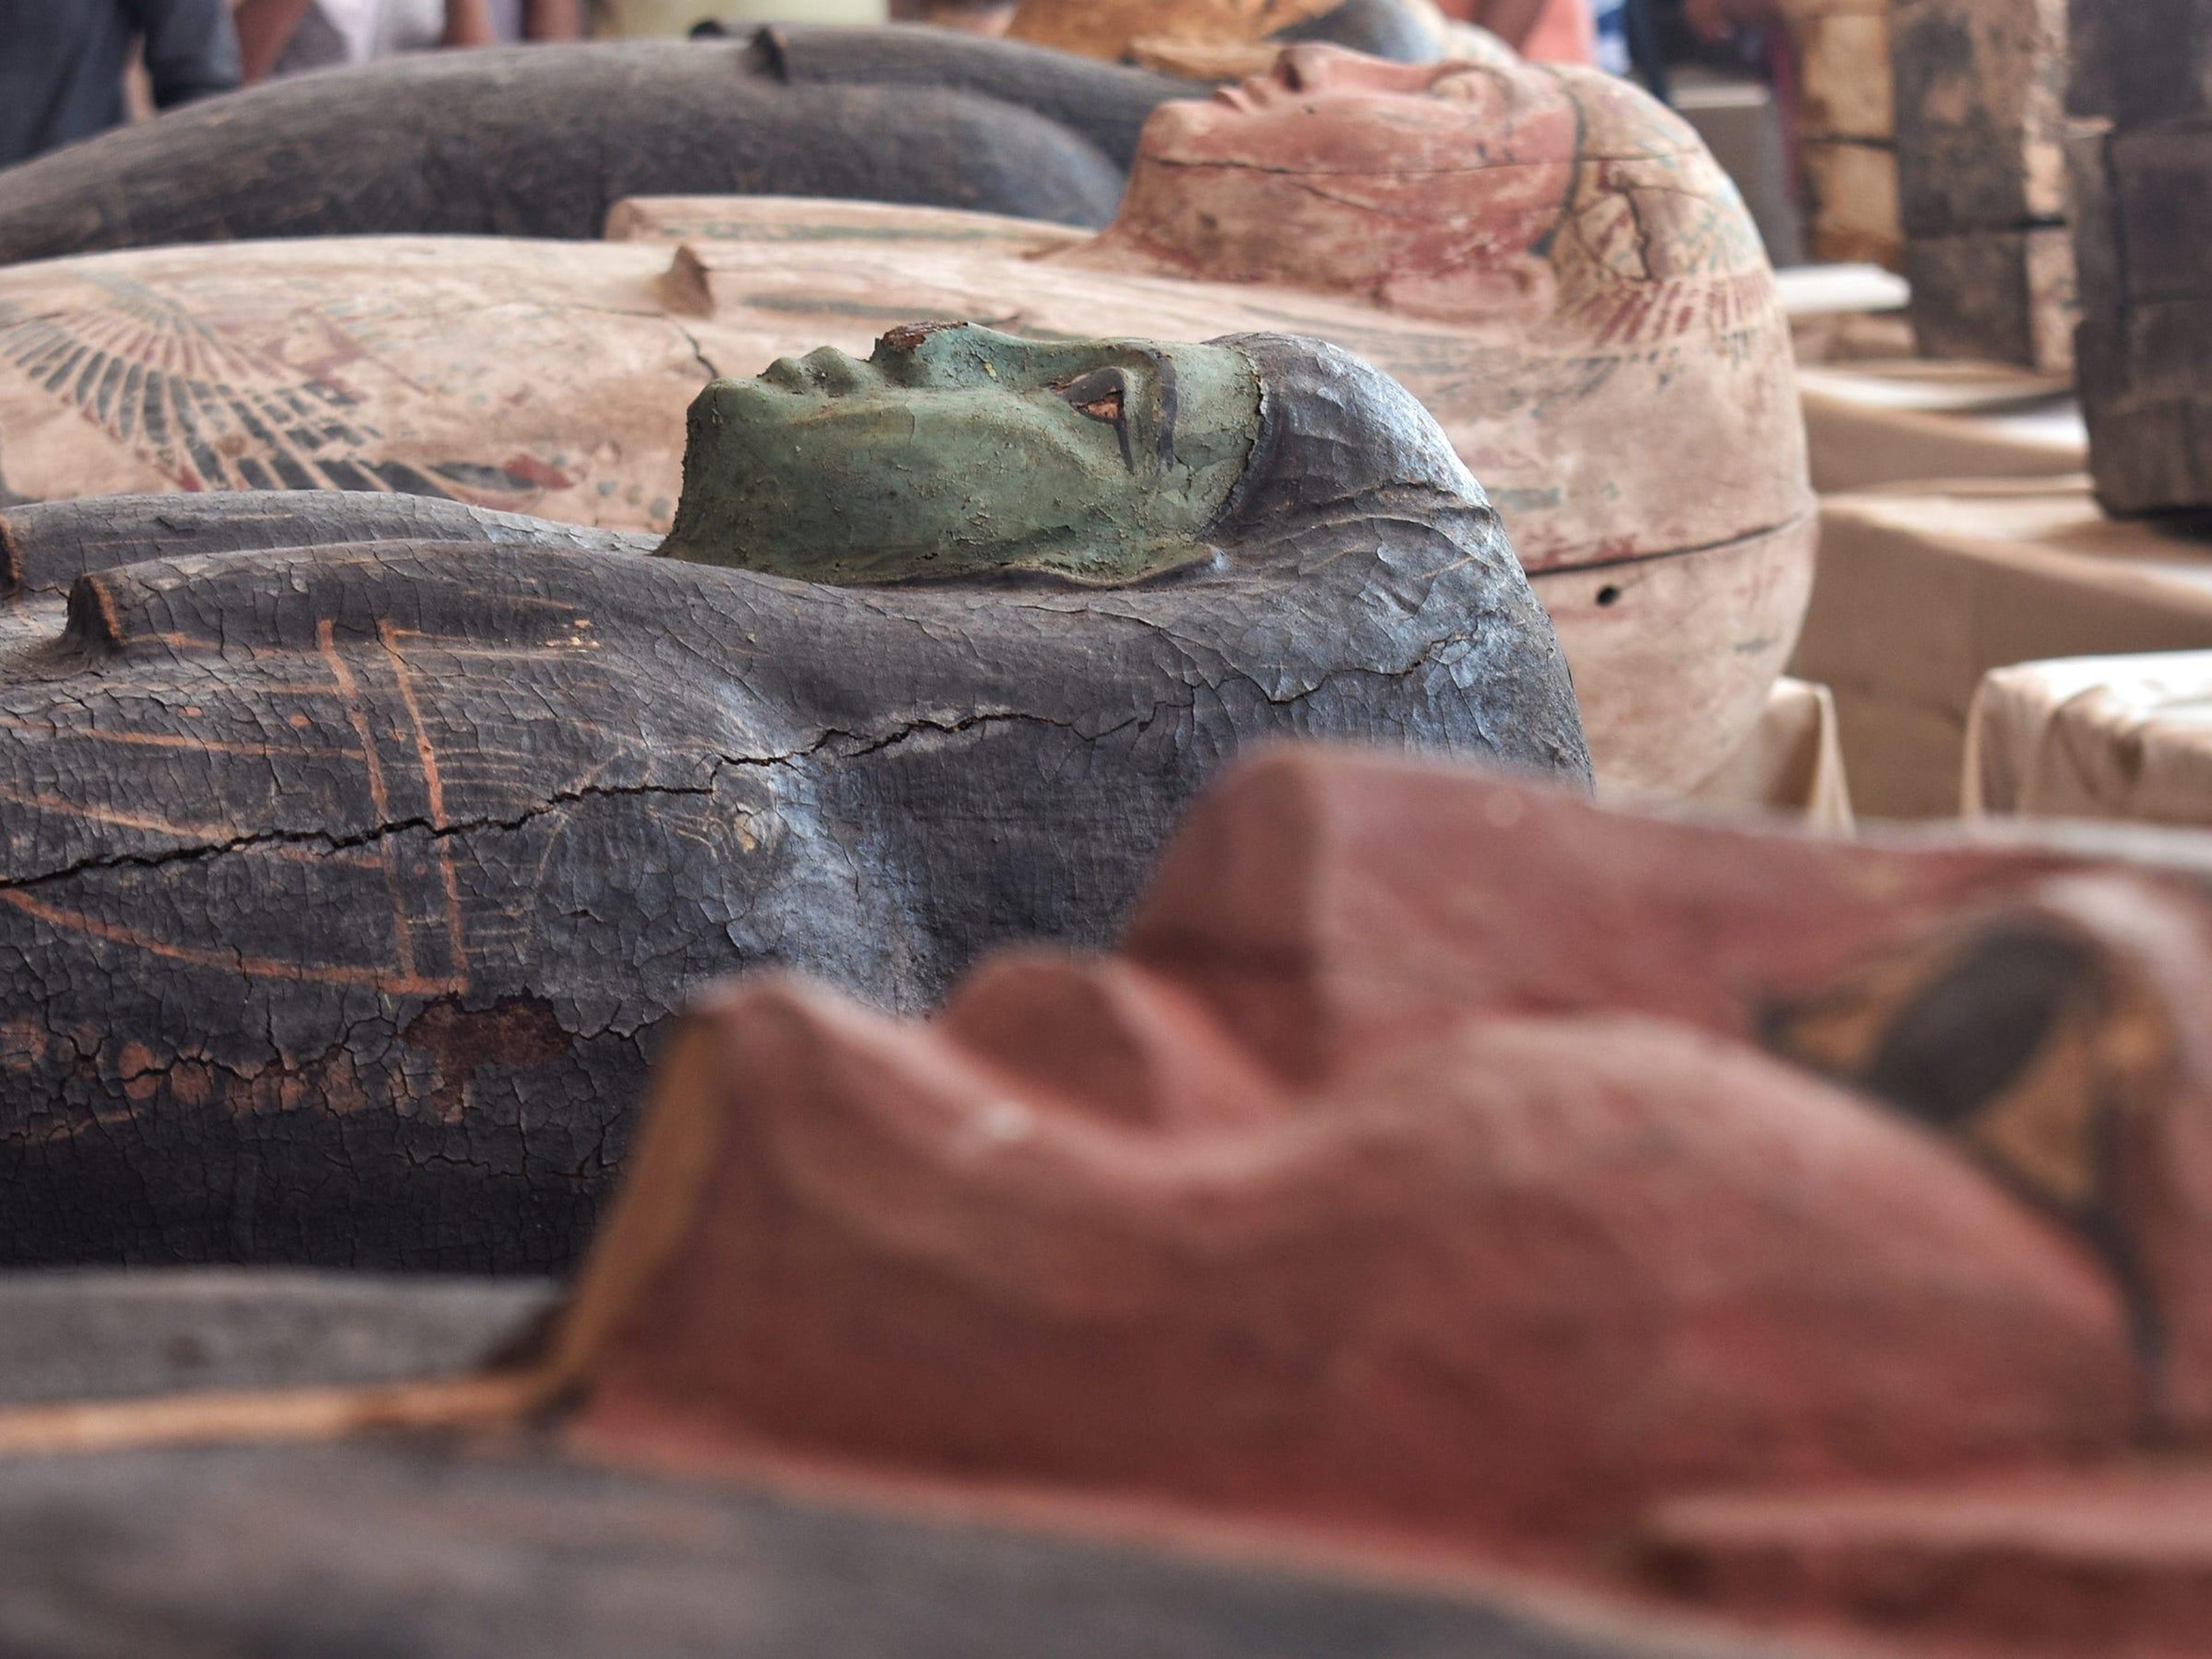 Ataúdes de colores recién descubiertos de Saqqara en exhibición el 3 de octubre de 2020. Han estado perfectamente sellados durante miles de años.